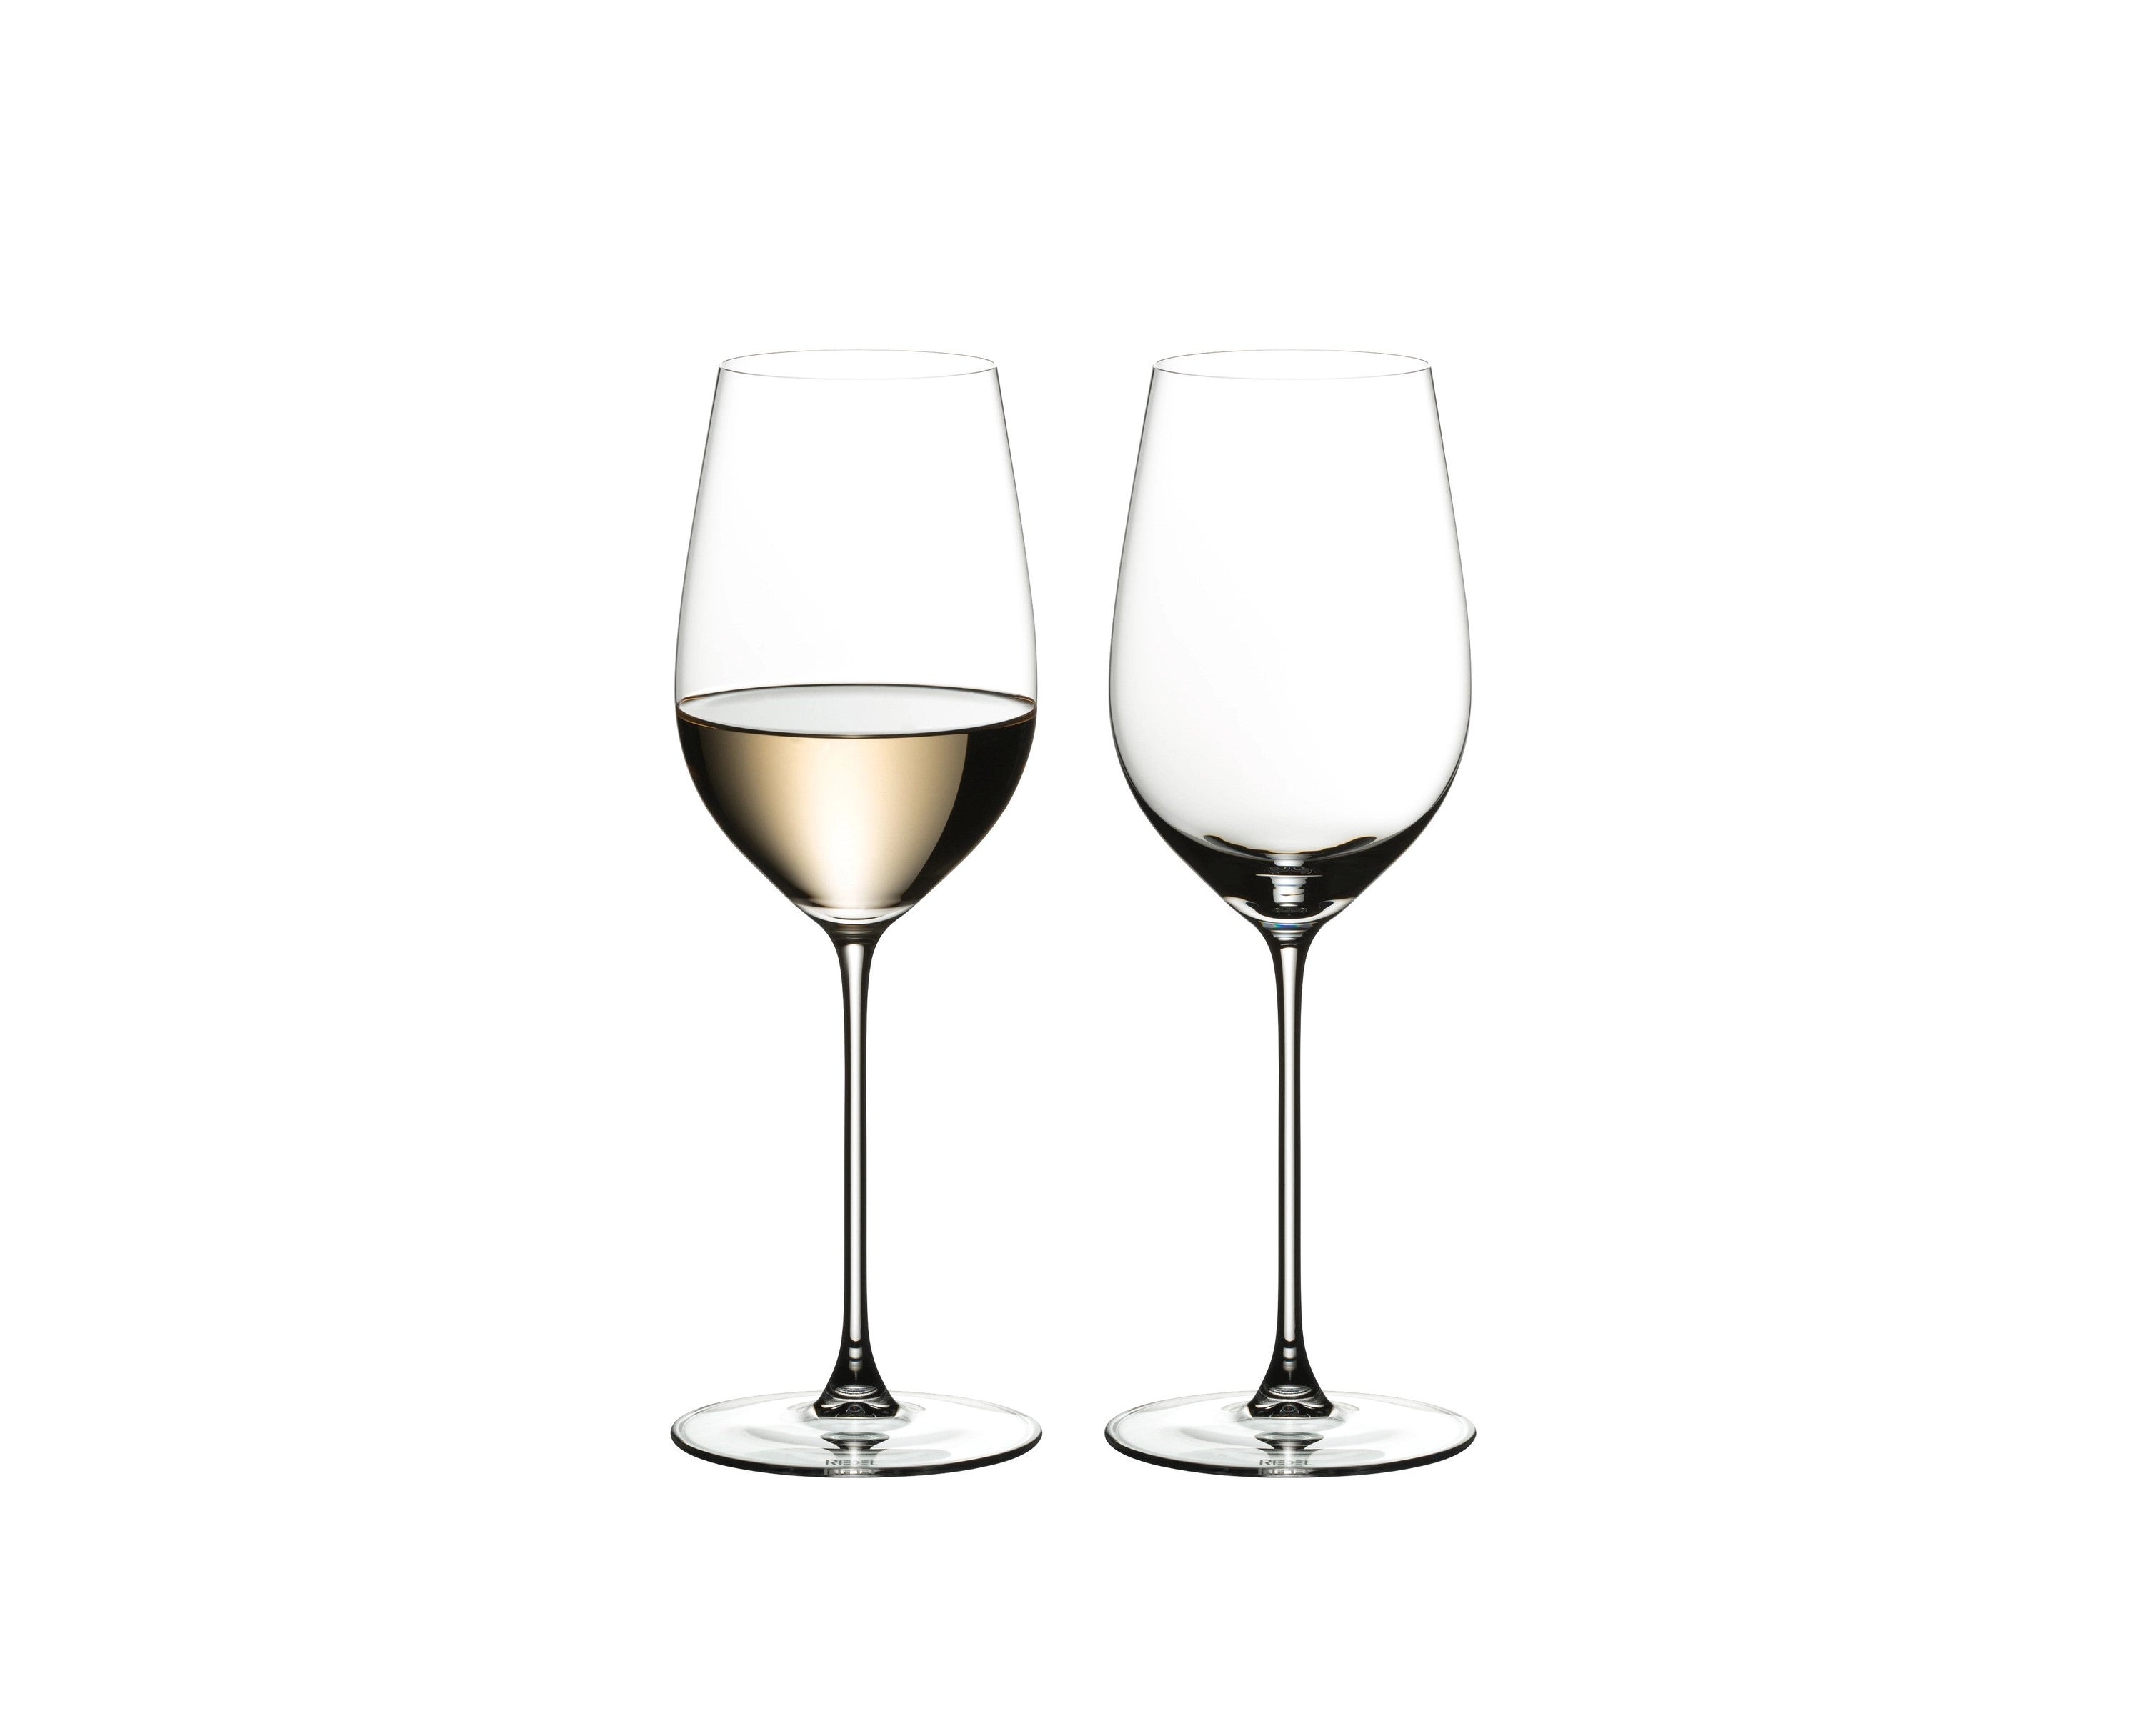 Riedel Veritas Riesling/Zinfandel Goblets, Set of 2 glasses